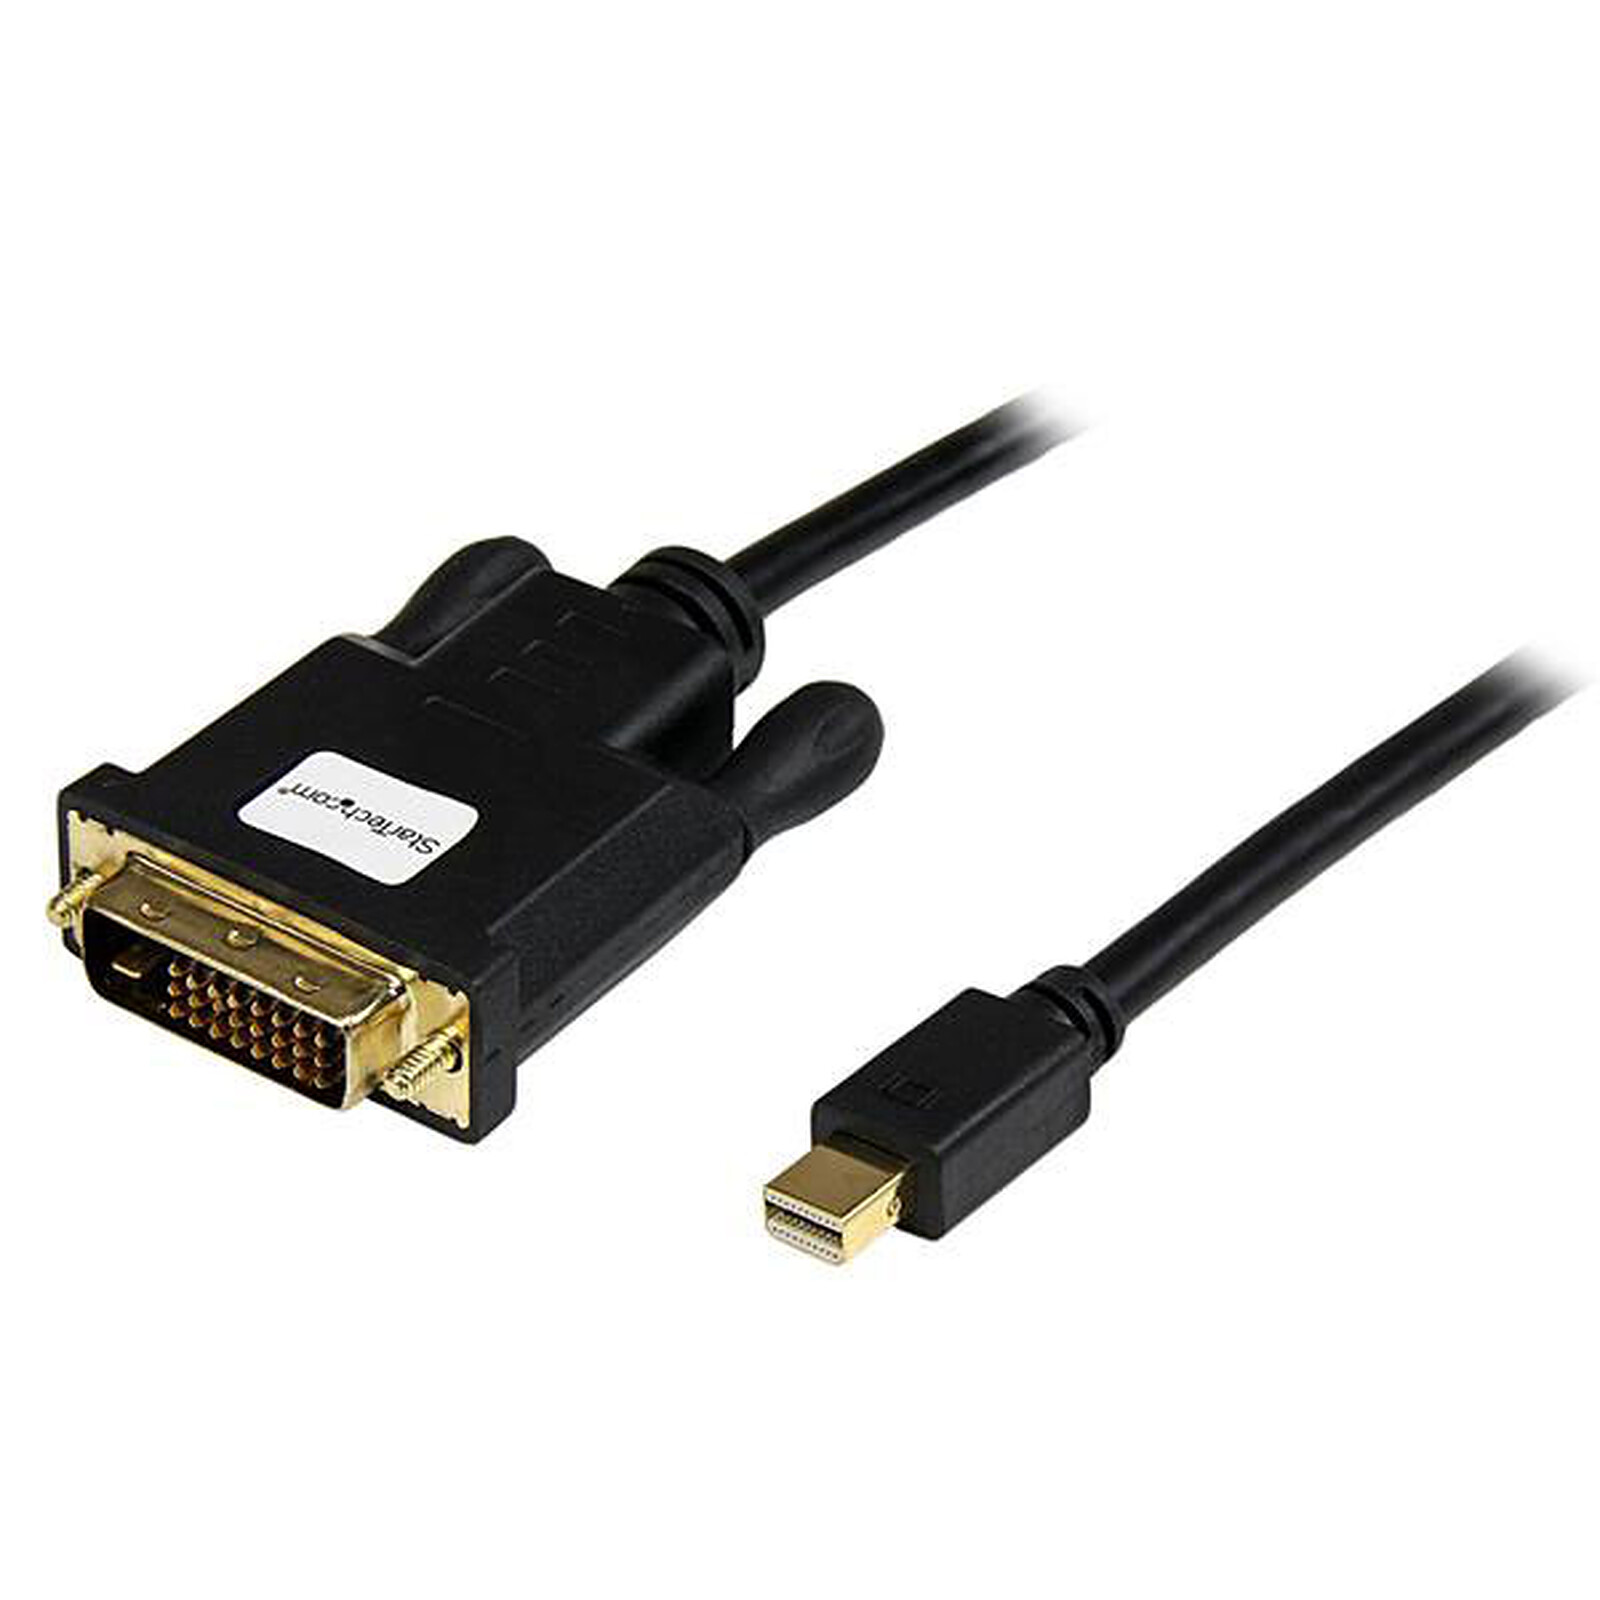 Startech : CABLE ADAPTATEUR MINI DP VERS HDMI de 2 M - M/M - 4K - NOIR